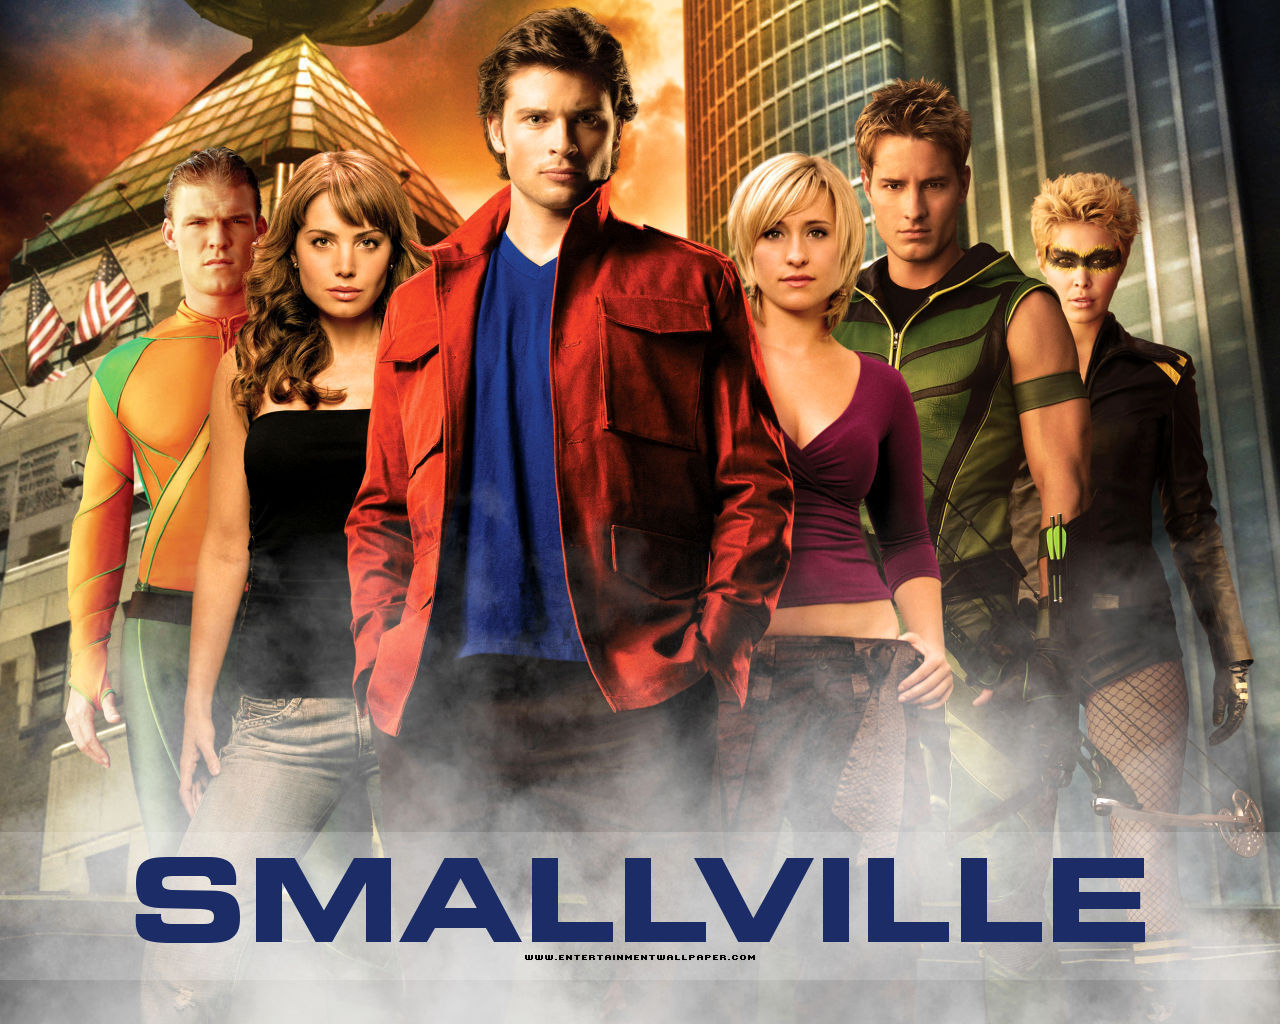 papel pintado smallville,película,póster,musical,programa de televisión,personaje de ficción